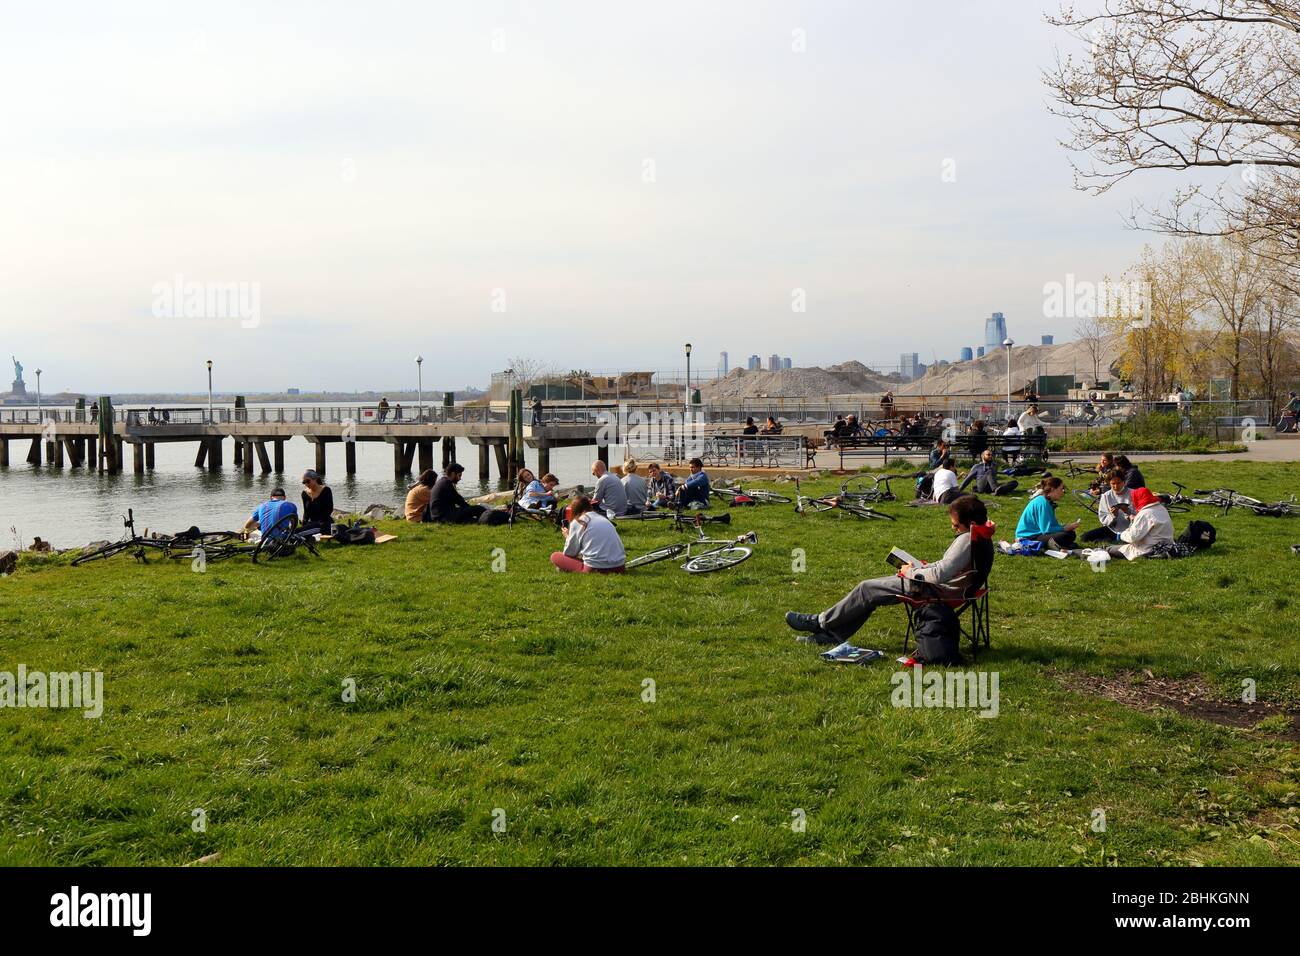 Les gens de Louis Valentino Jr. Park et Pier à Red Hook, durant un samedi après-midi ensoleillé chaud durant le coronavirus, Brooklyn, New York, NY, 25 avril 2020 Banque D'Images